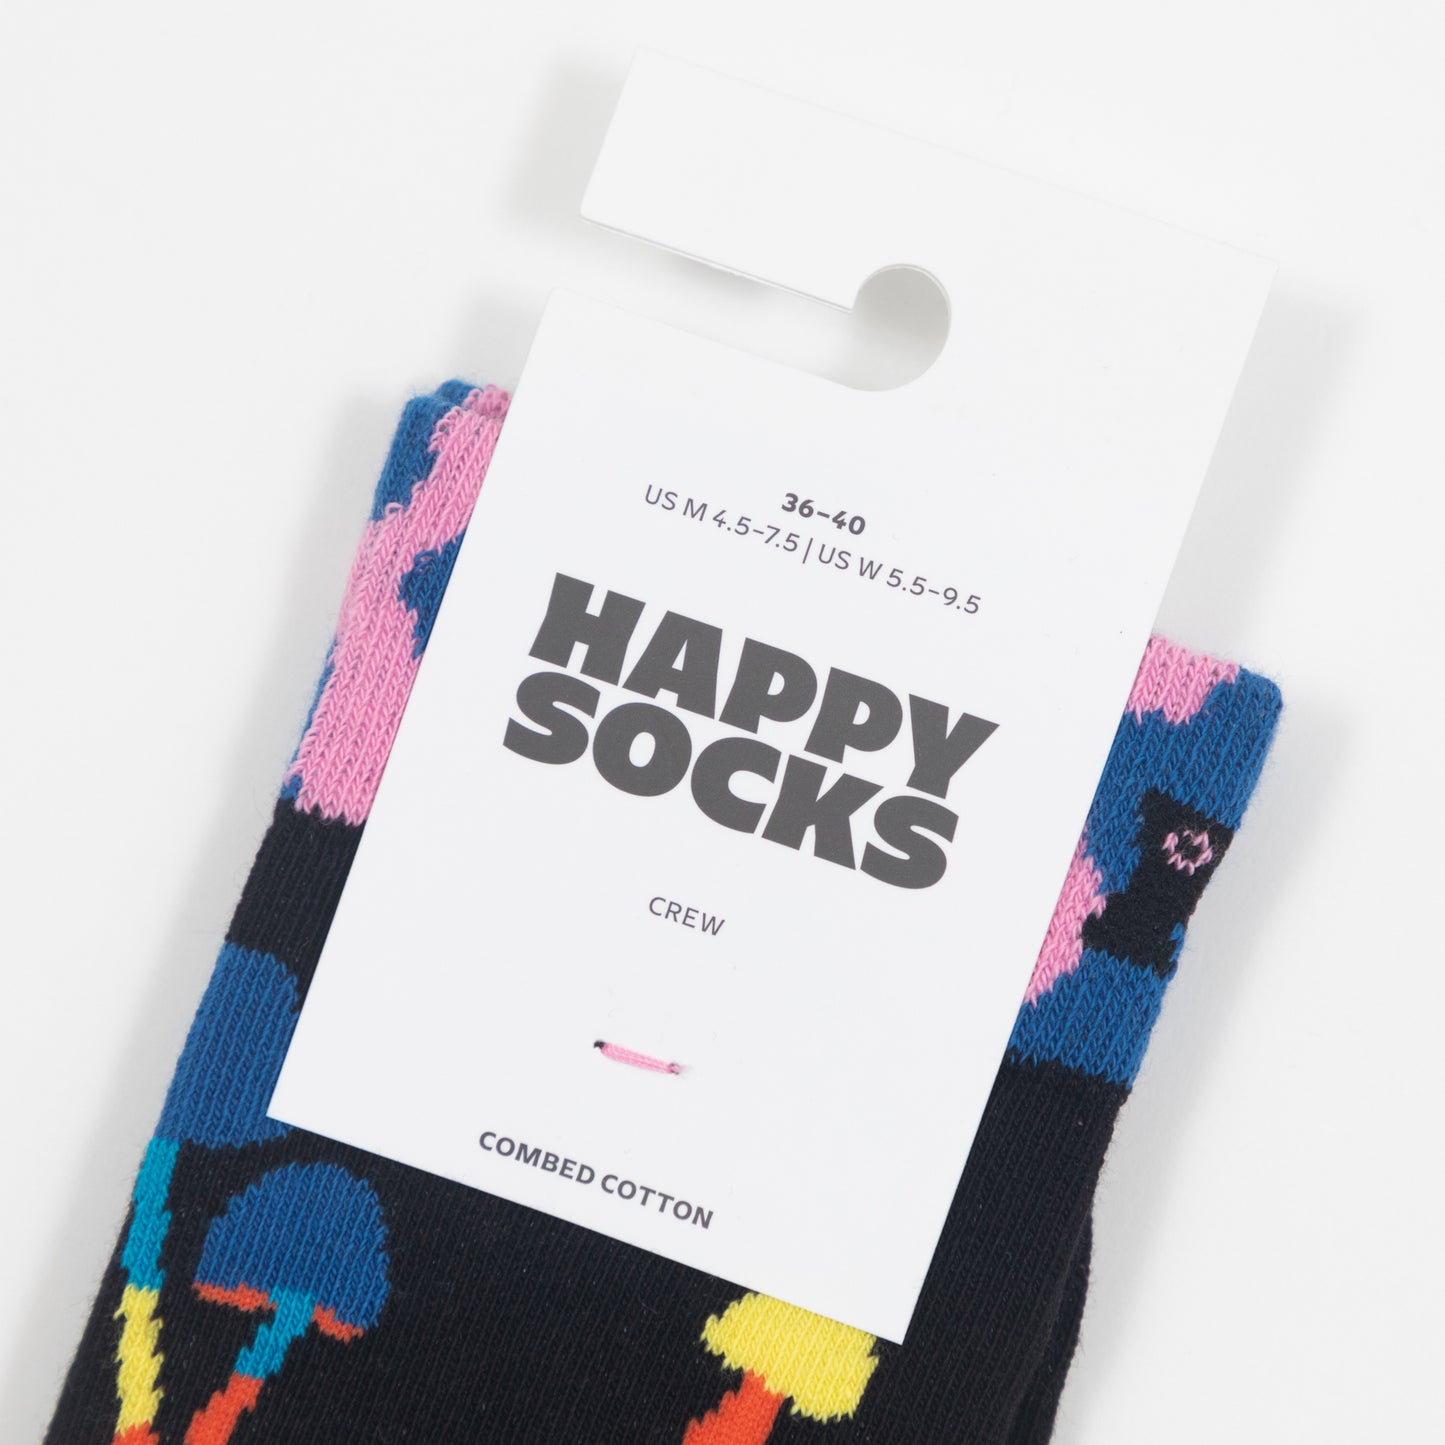 HAPPY SOCKS Mushroom Socks in BLACK & MULTI